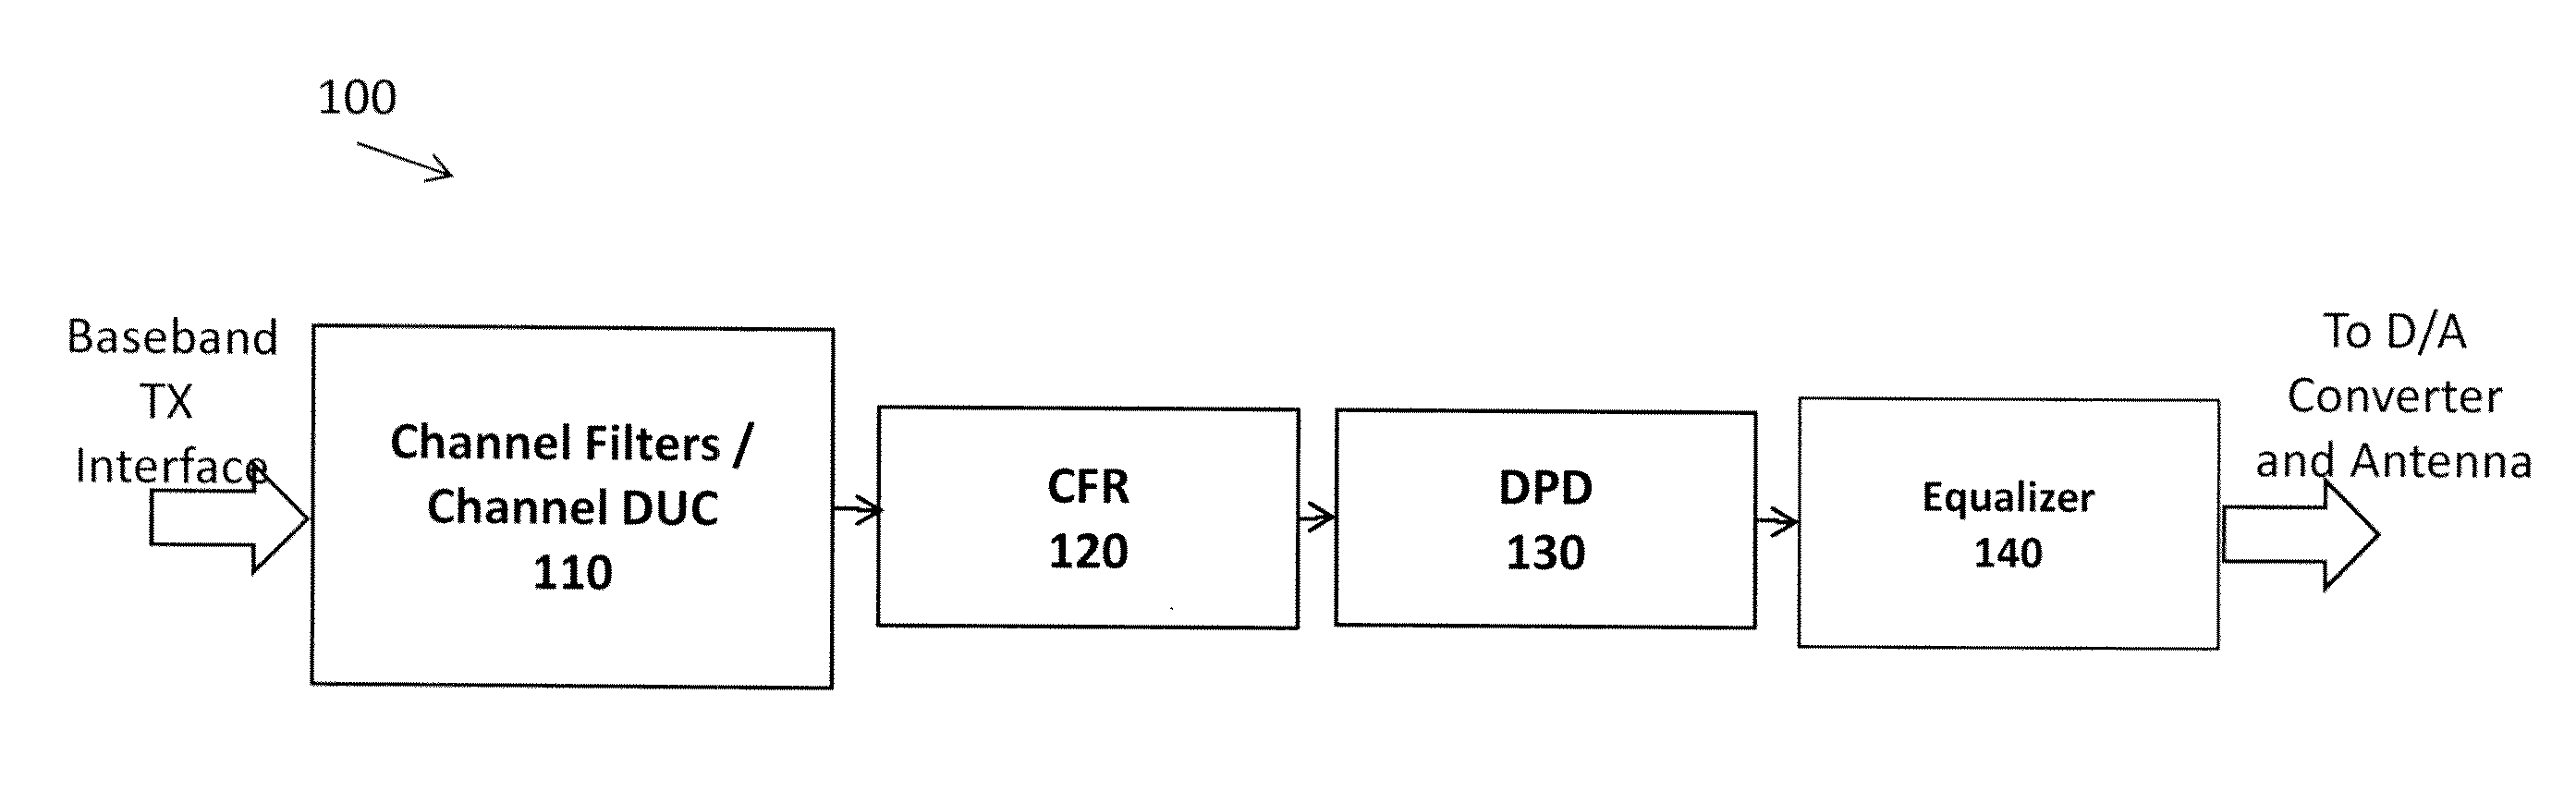 Recursive digital pre-distortion (DPD)